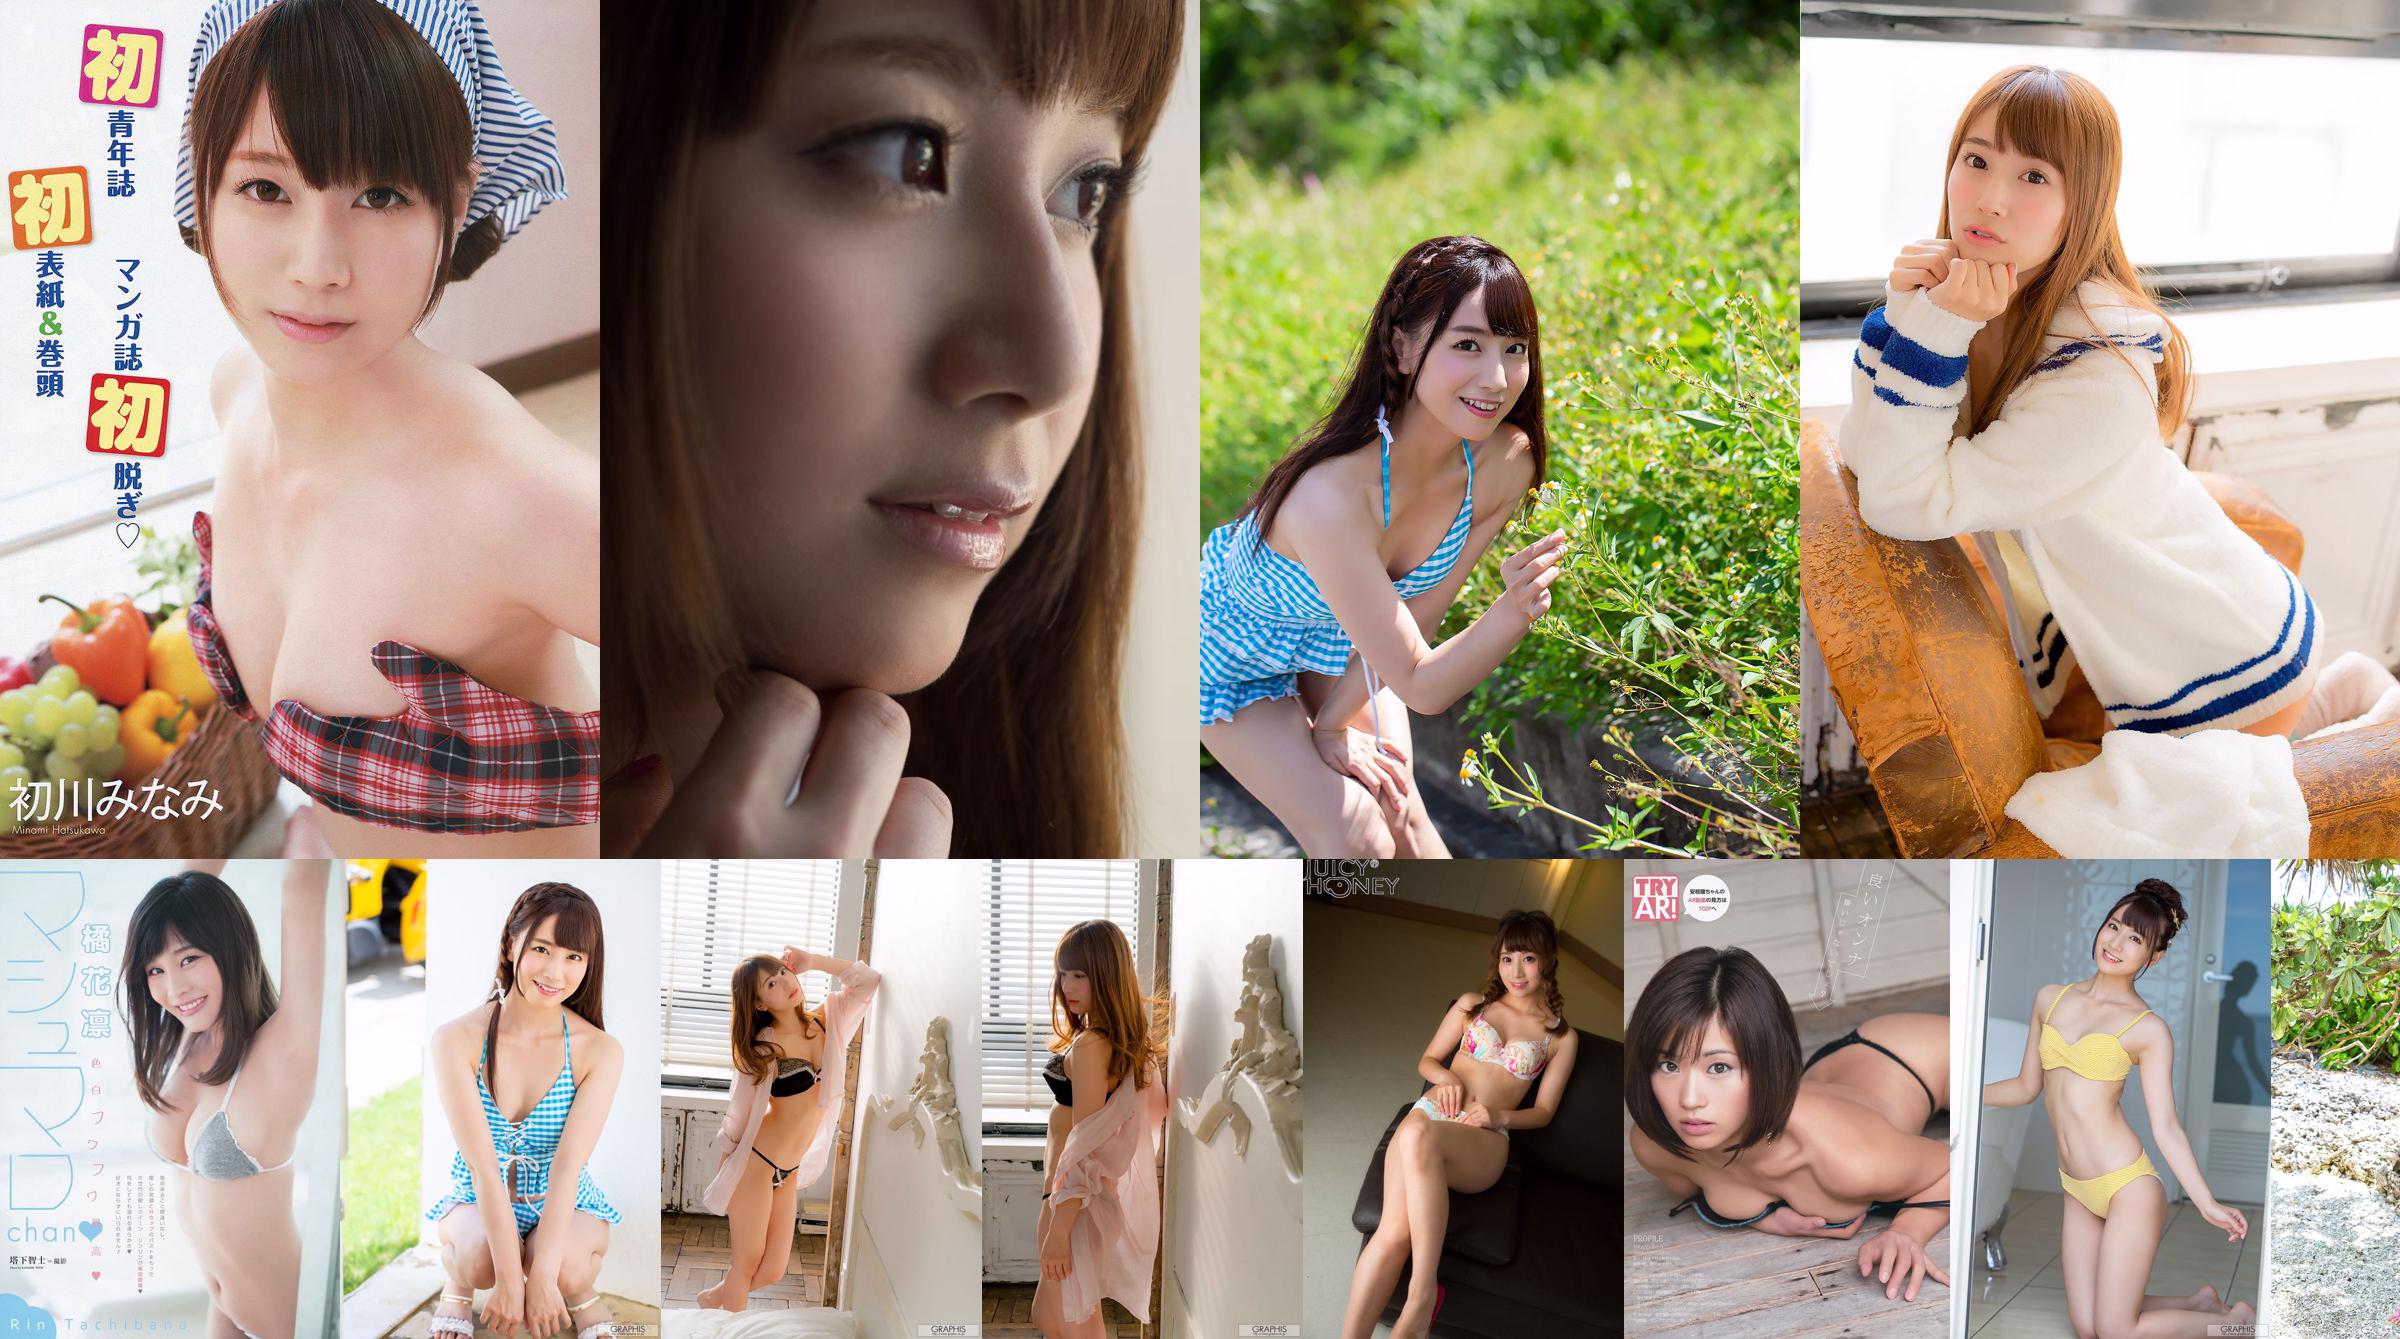 [X-City] Juicy Honey jh213 Minami Hatsukawa Trading Card Linked Juicy Honey No.ed2c1c Seite 4